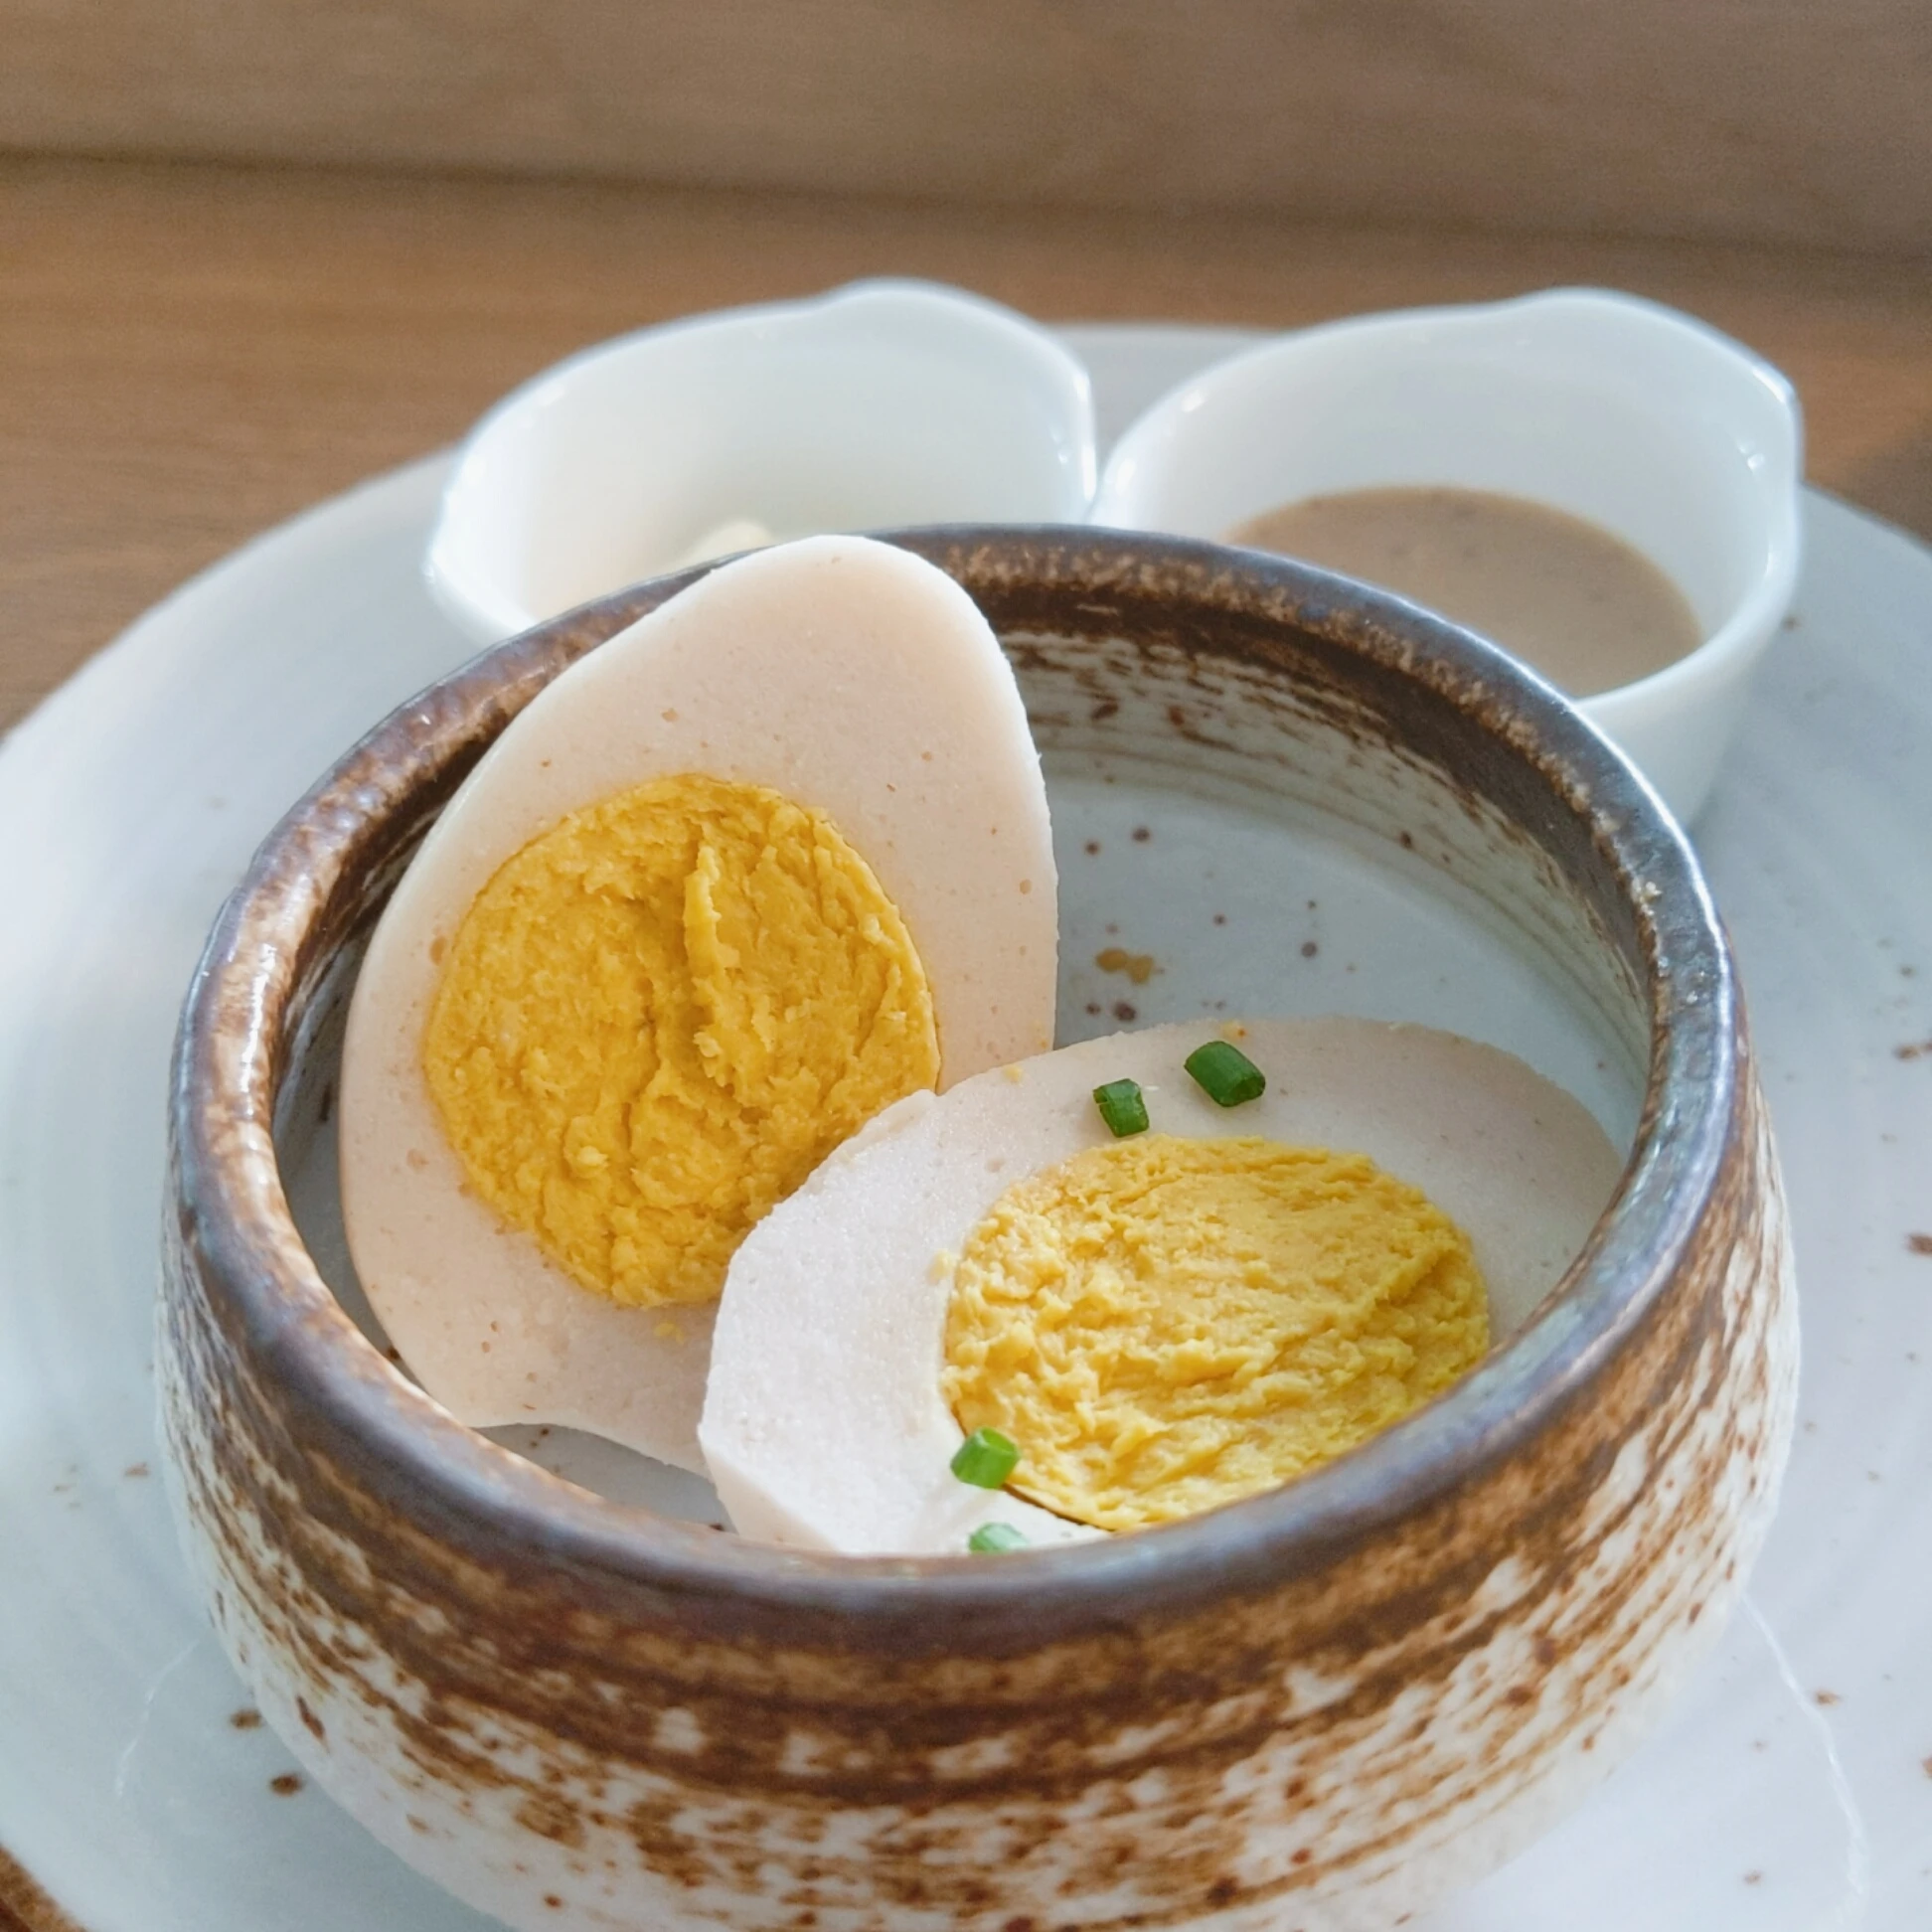 世界初、植物由来の「ヴィーガンゆで卵」が登場—シンガポールのフードメーカーが開発